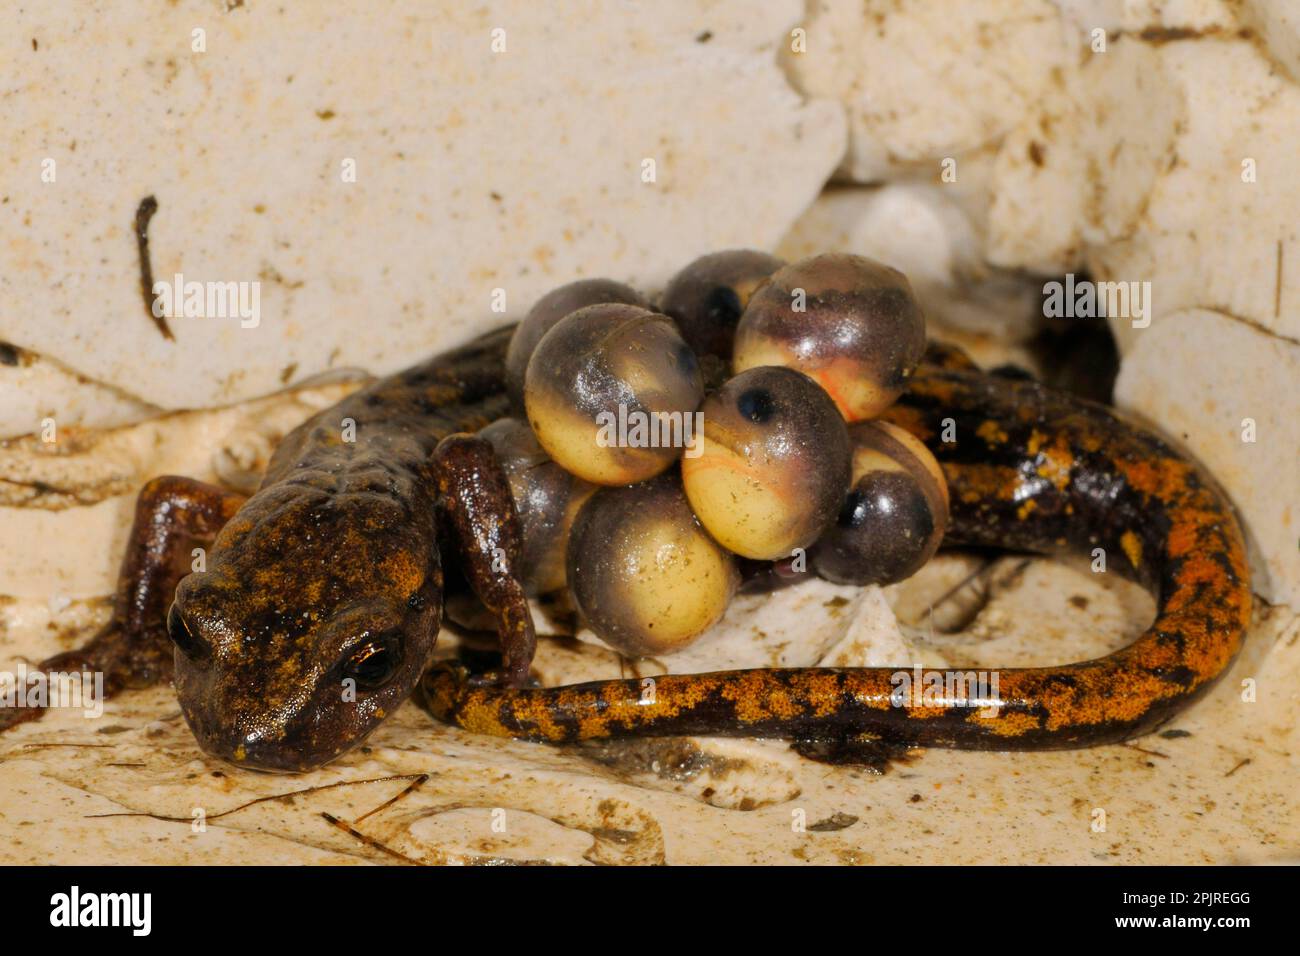 Grotta di Strinati Salamander (Speleomantes strinatii) femmina adulta, che protegge le uova durante lo sviluppo, embrioni con occhi visibili, Italia Foto Stock